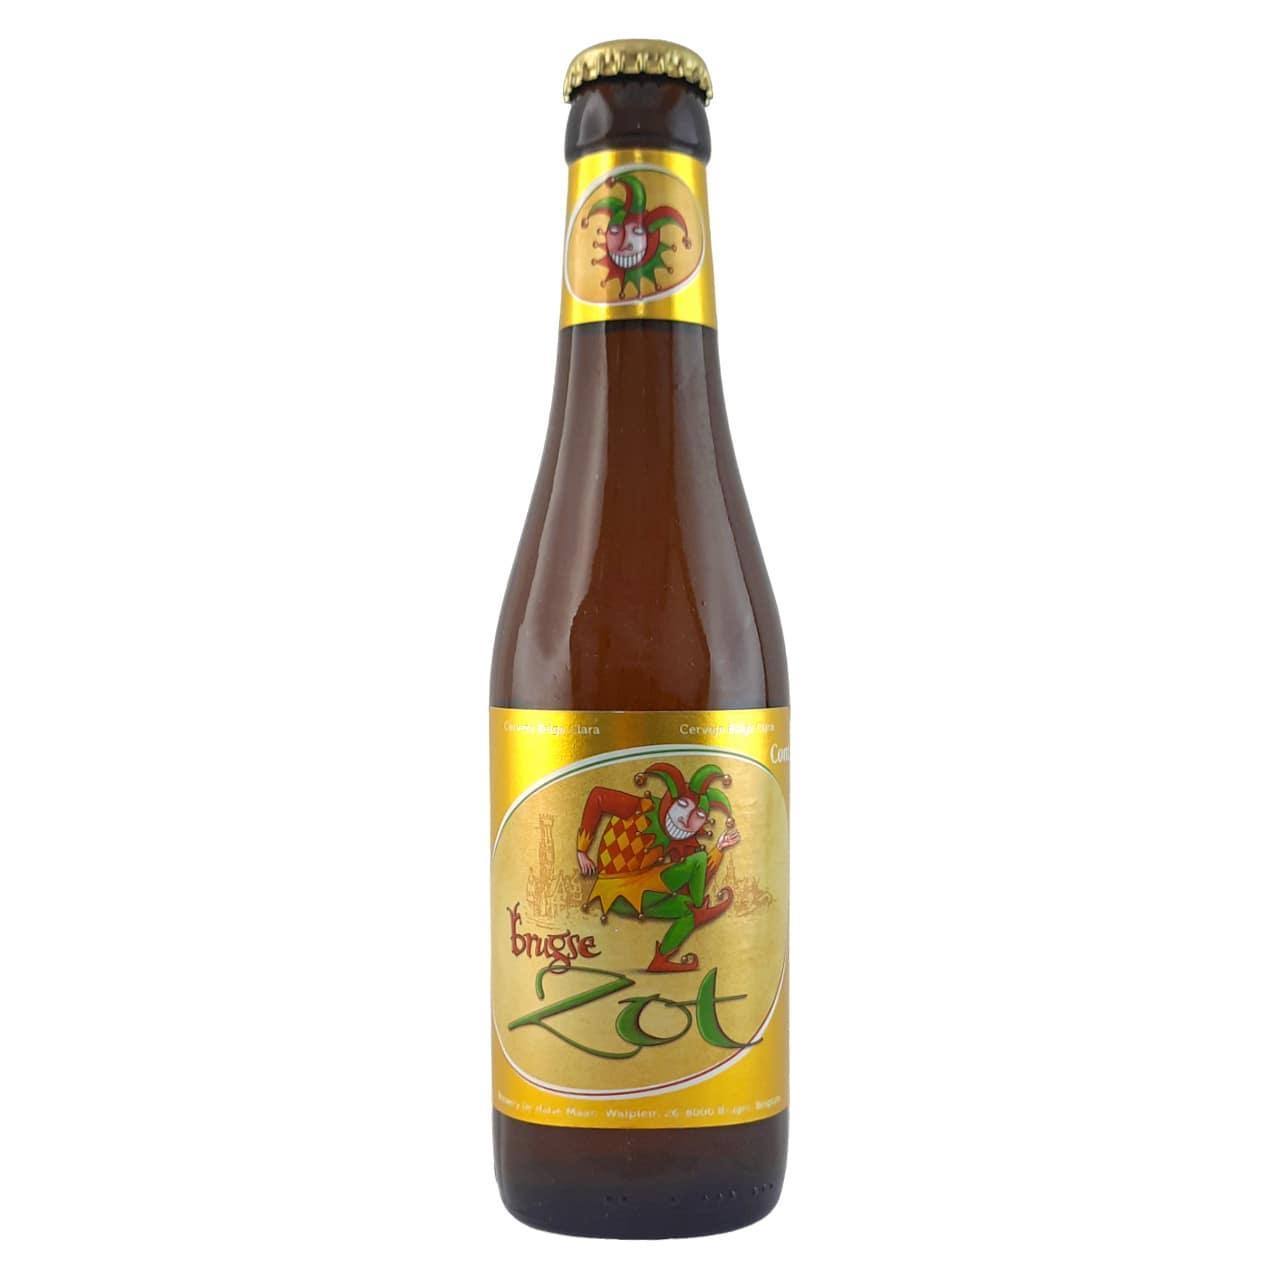 Brugse Zot Blonde Beer - 330ml